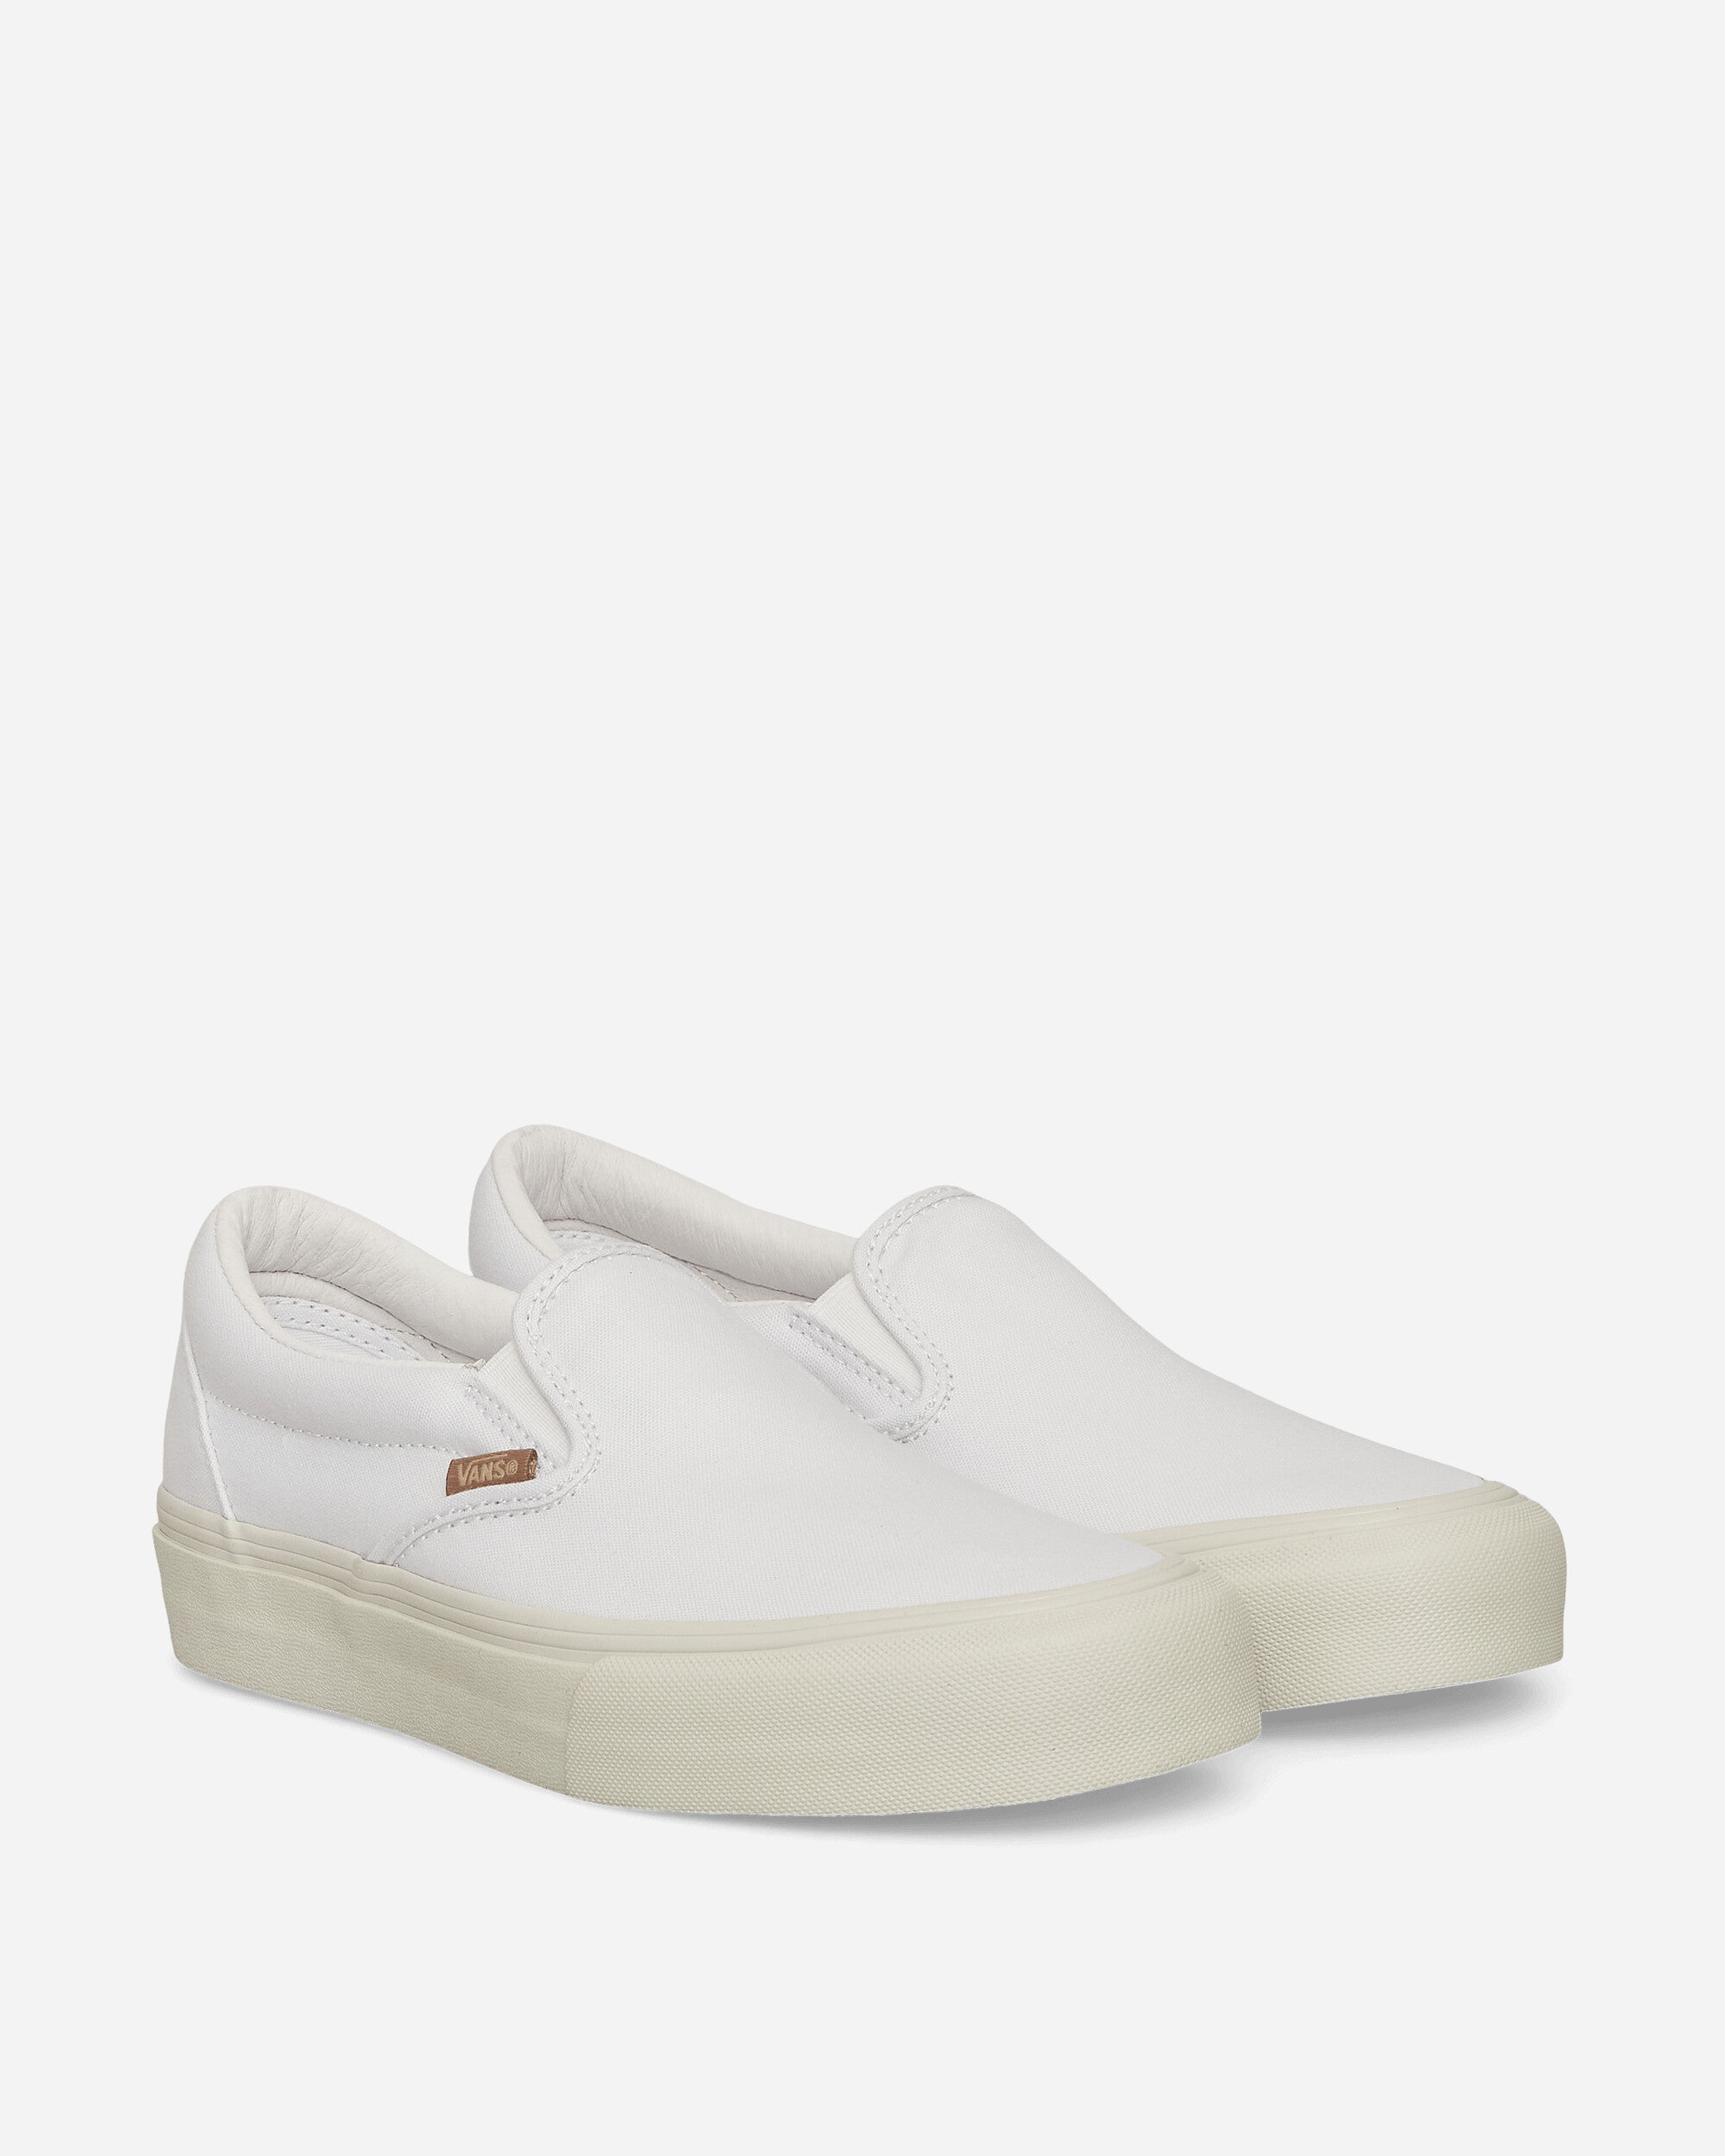 JJJJound Classic Slip-On LX Sneakers True White